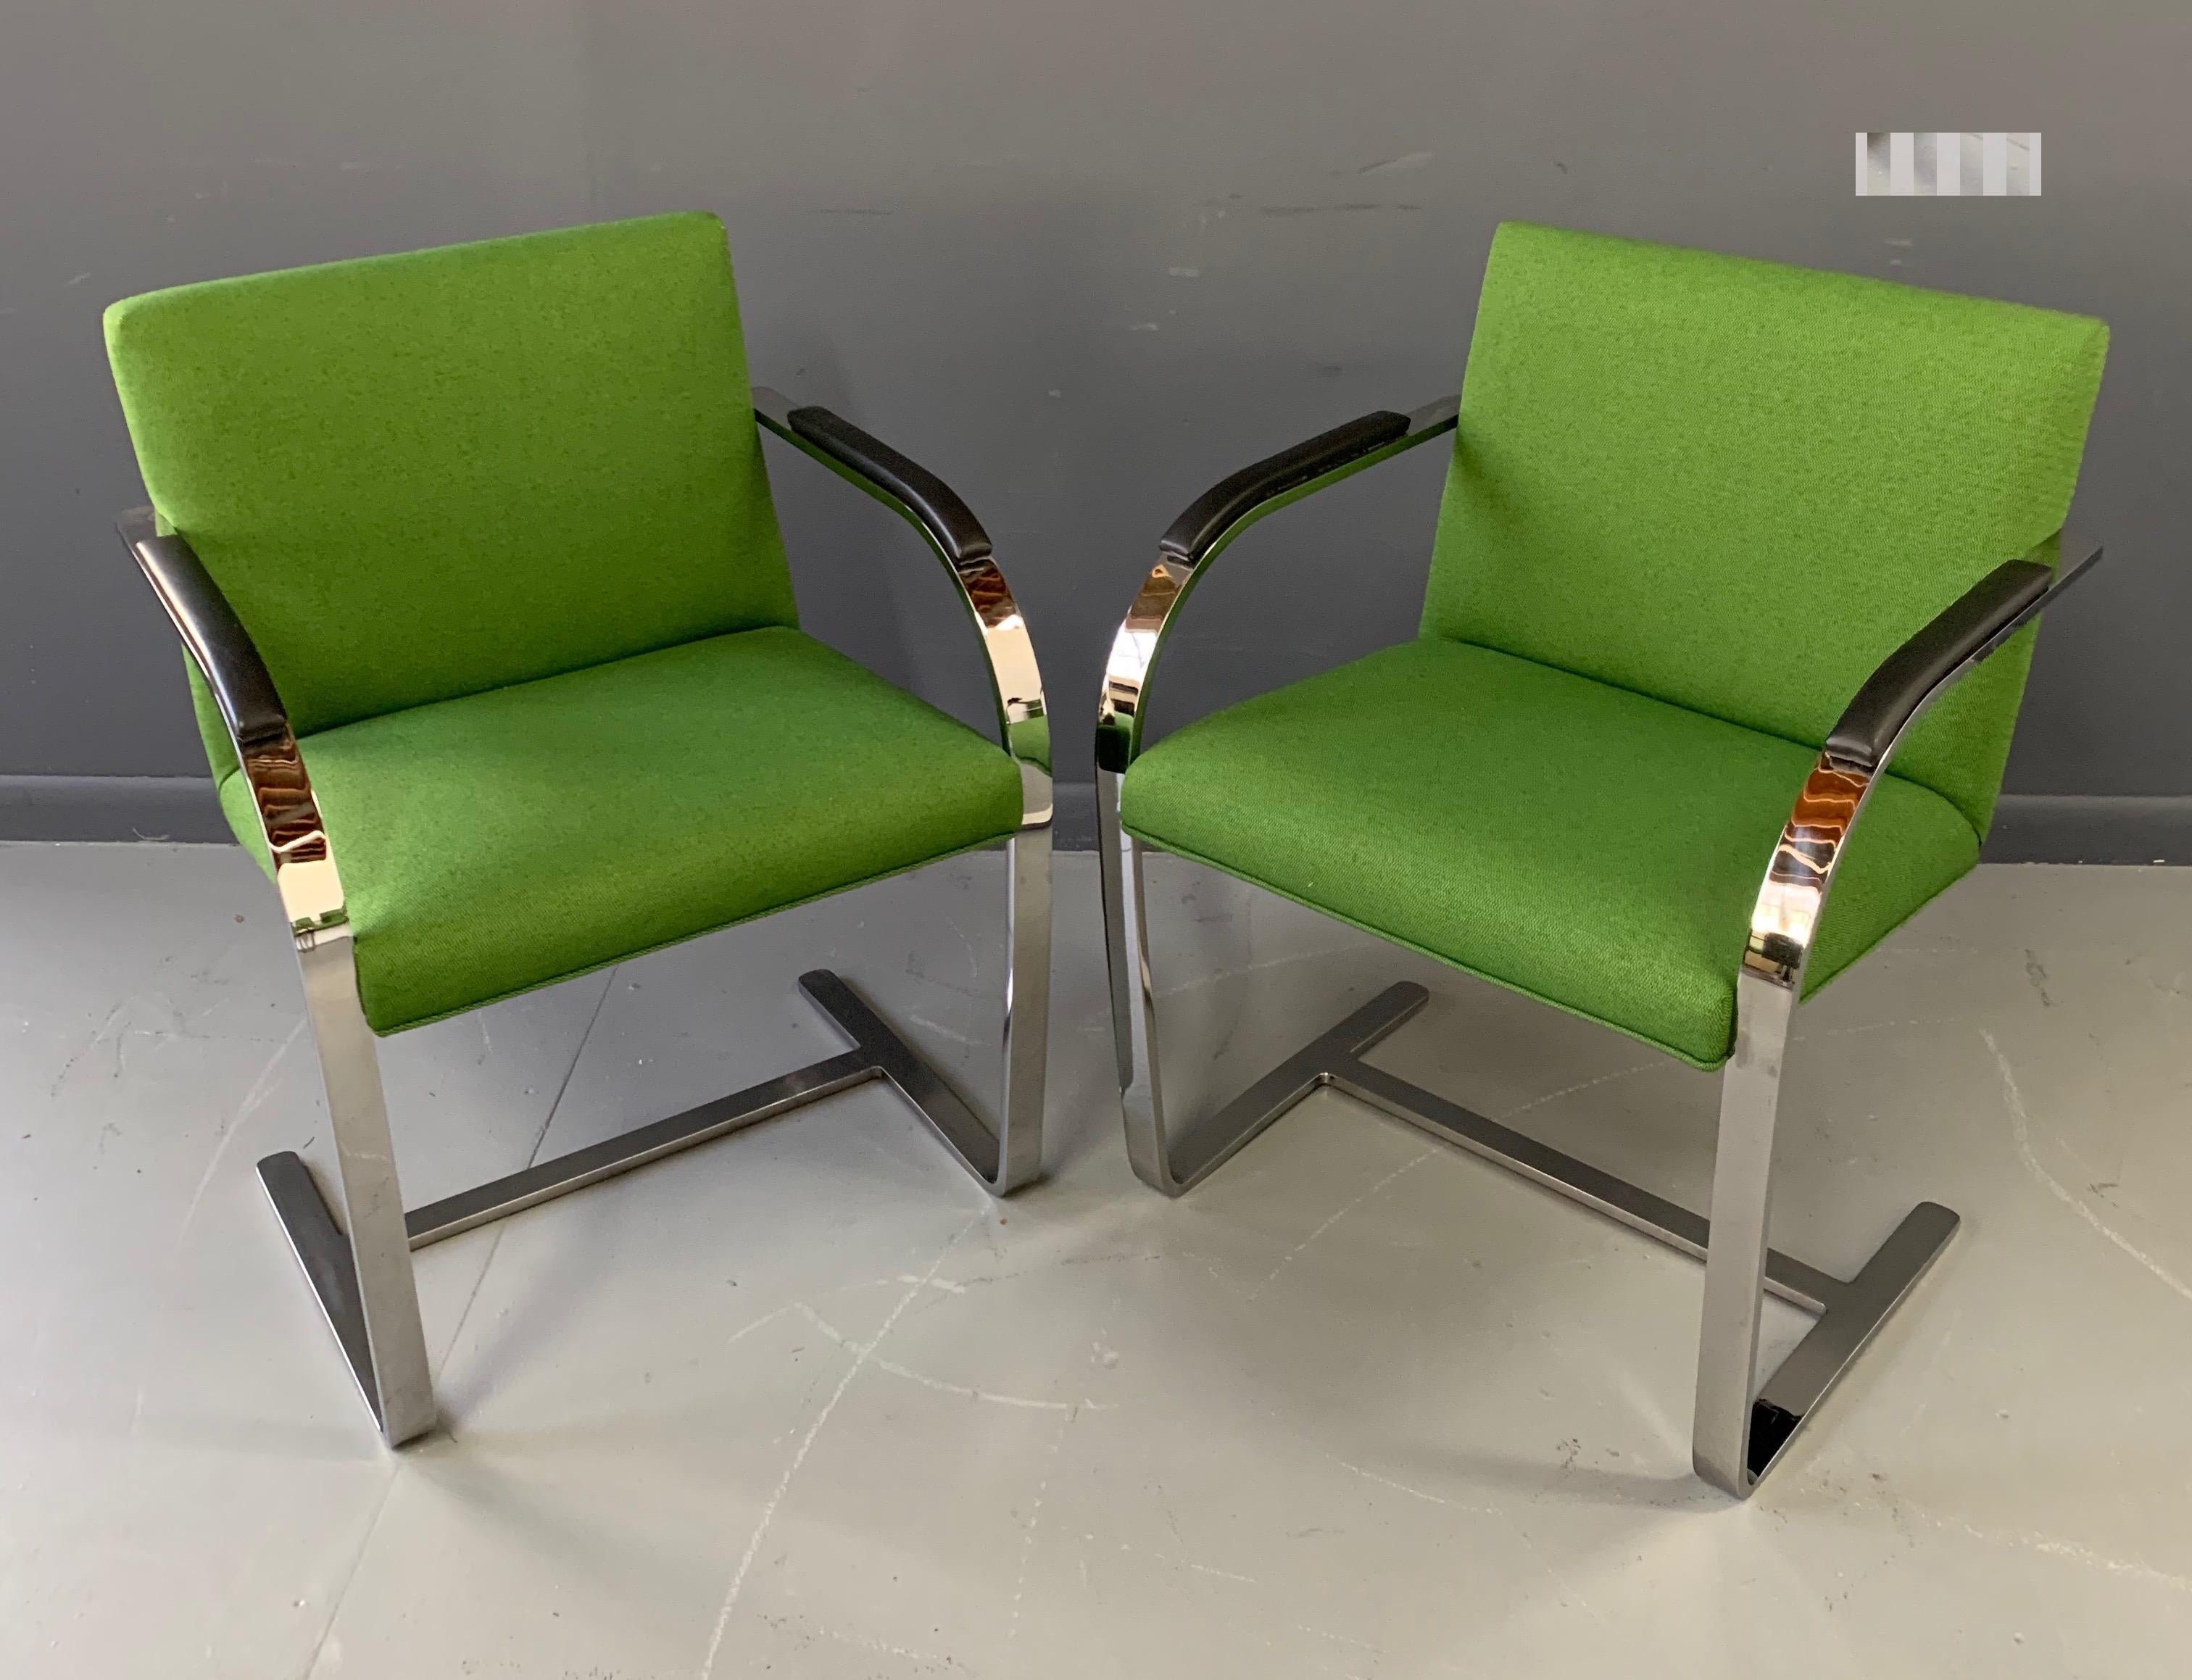 Der Knoll Brno Sessel wurde 1930 von Meis van der Rohe entworfen und ist bekannt für sein schlankes Profil, seine klaren Linien und seine Liebe zum Detail. Diese Stühle sind eine getreue Hommage an den Brünner Stuhl, wir können jedoch nicht